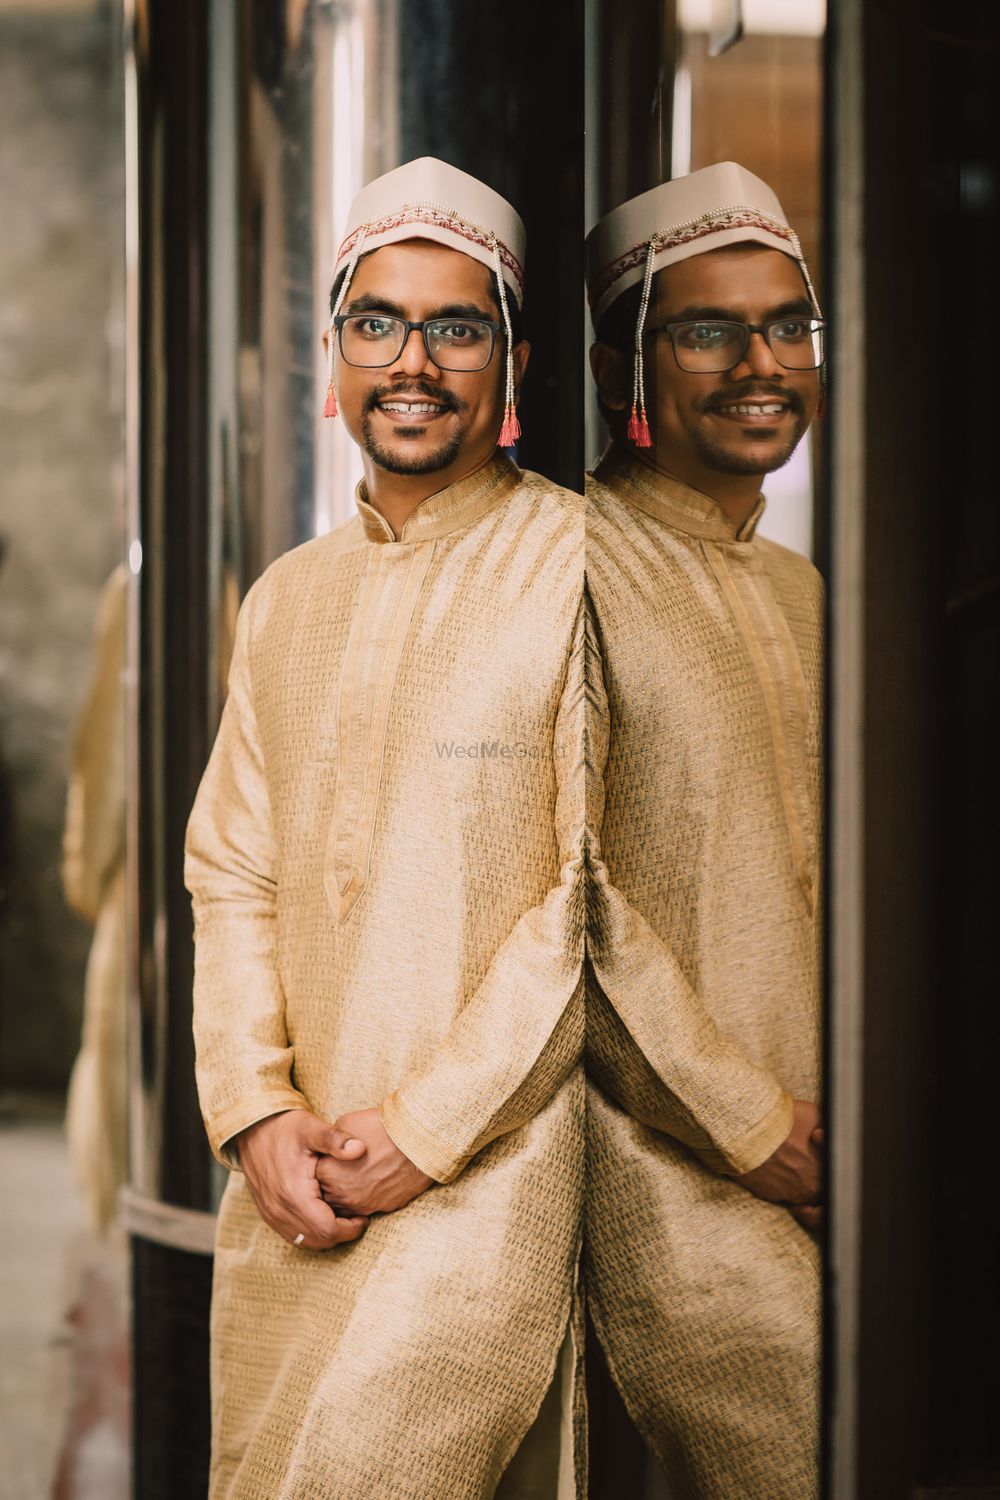 Photo From Shrutika & Vaibhav's Wedding - By StoryTeller by BT